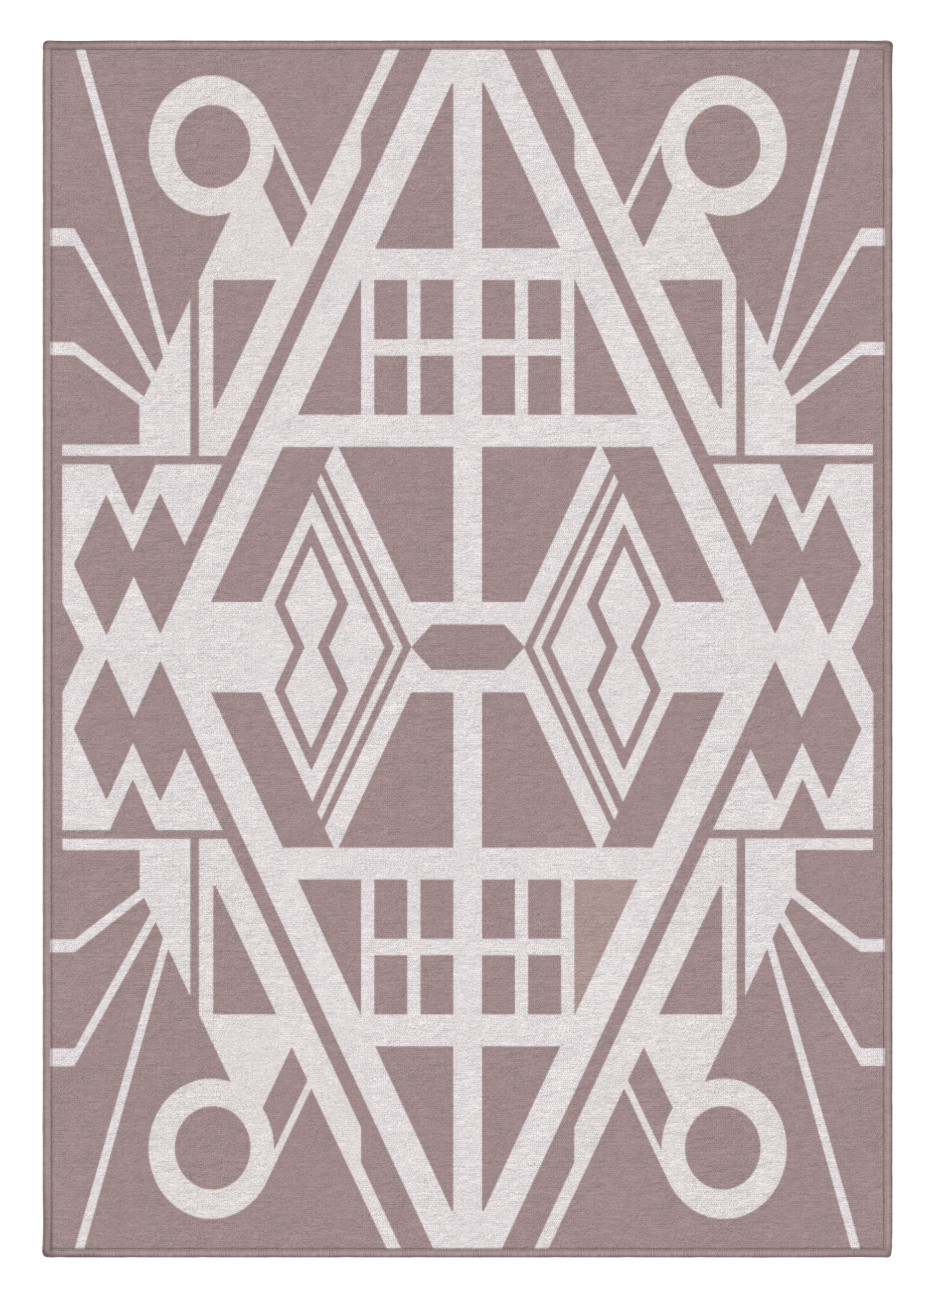 Dizajnový kusový koberec Mexico od Jindřicha Lípy - 120x170 cm GDmats koberce 